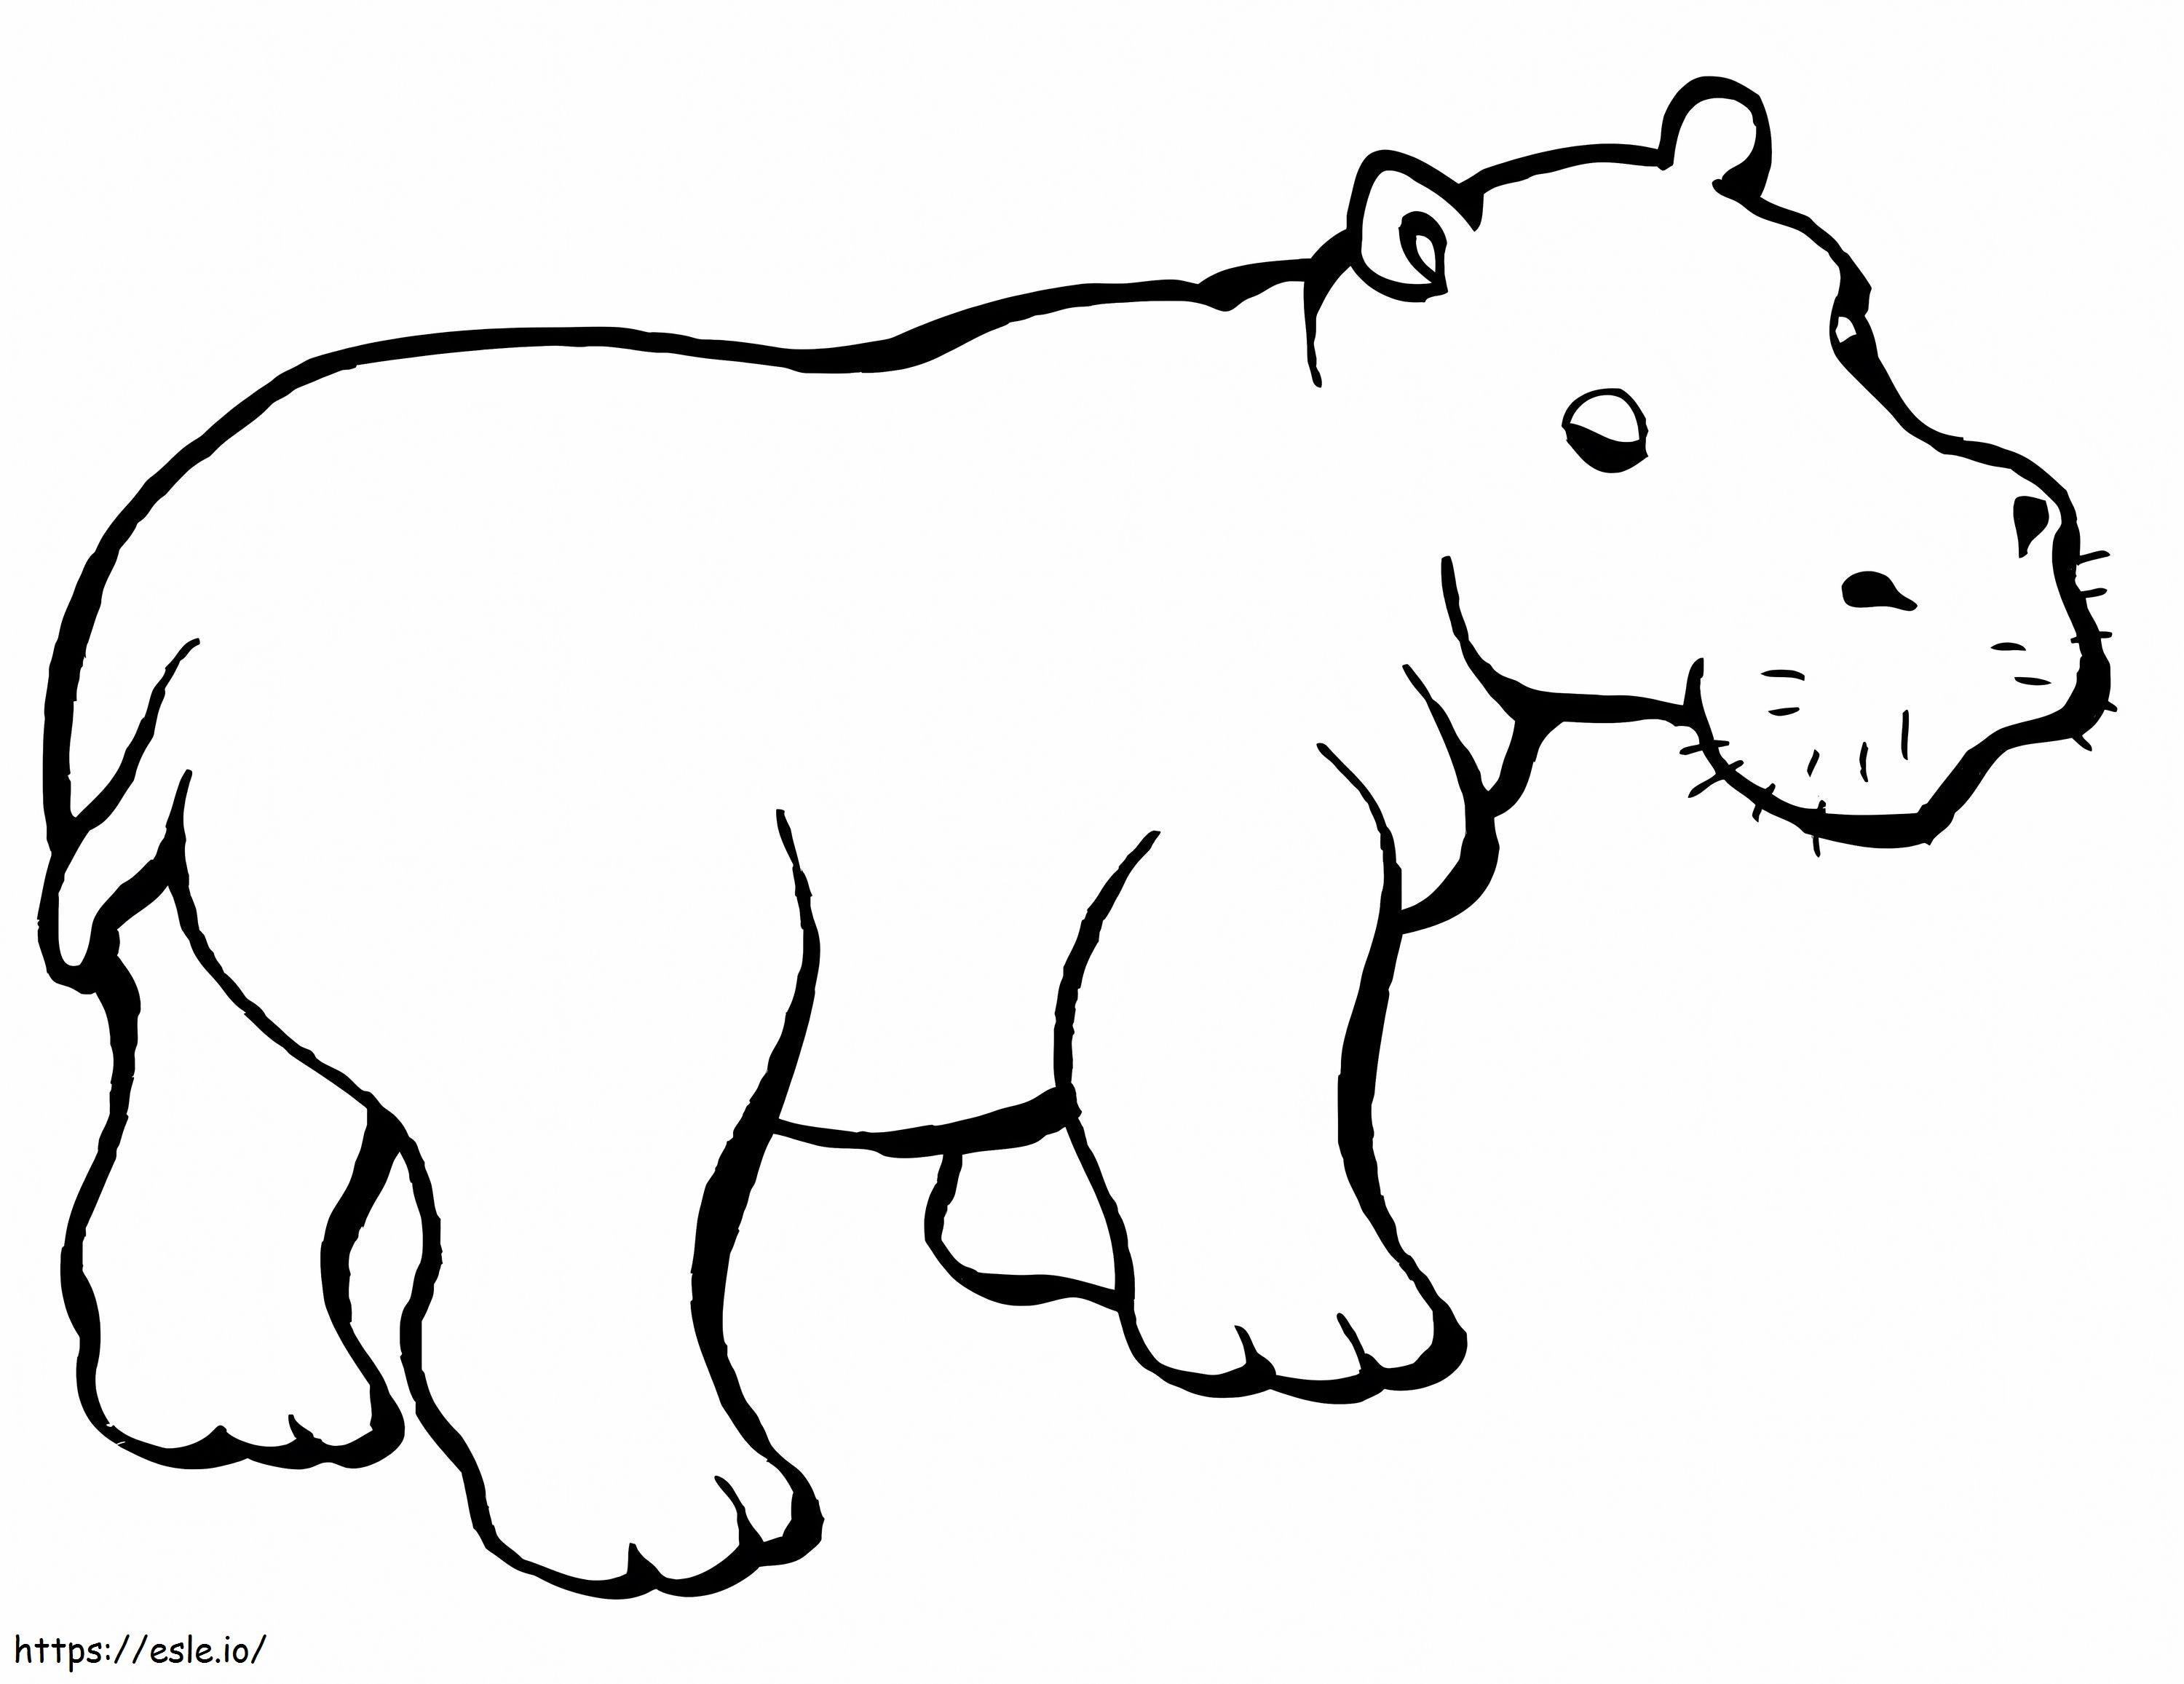  hipopótamo para colorear